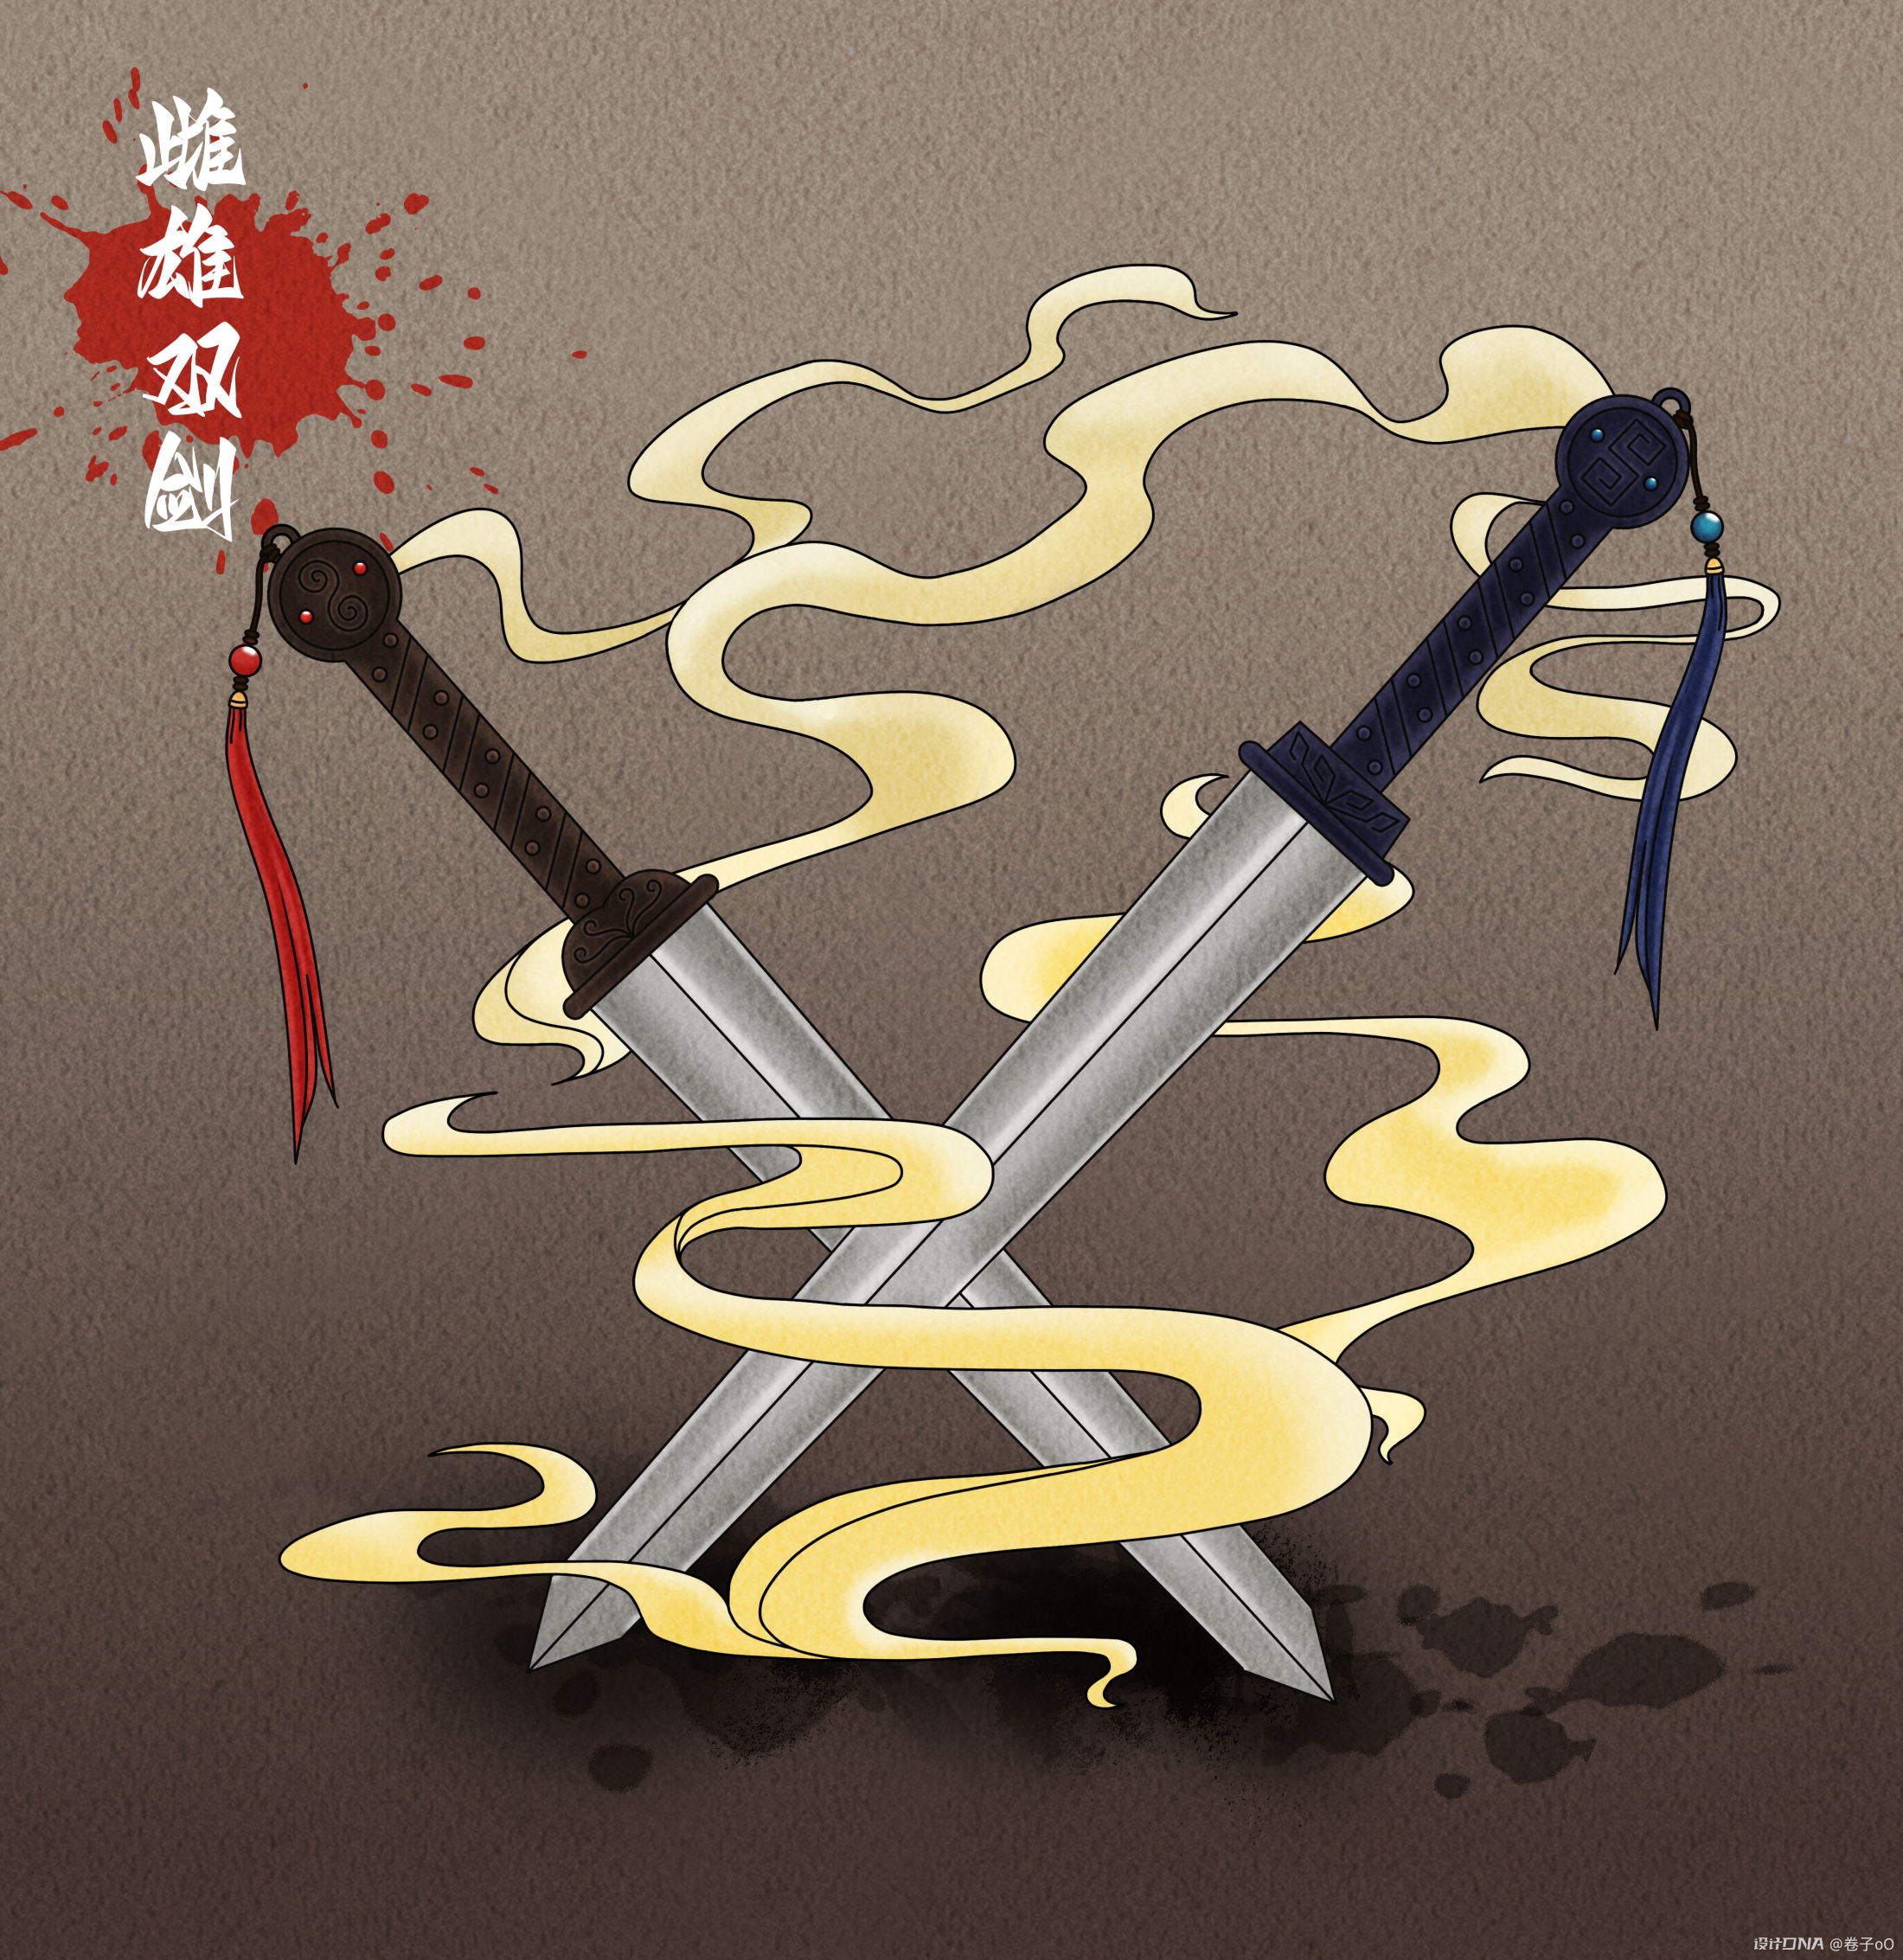 丈八蛇矛、雌雄双剑插画-热贡艺术风 图1